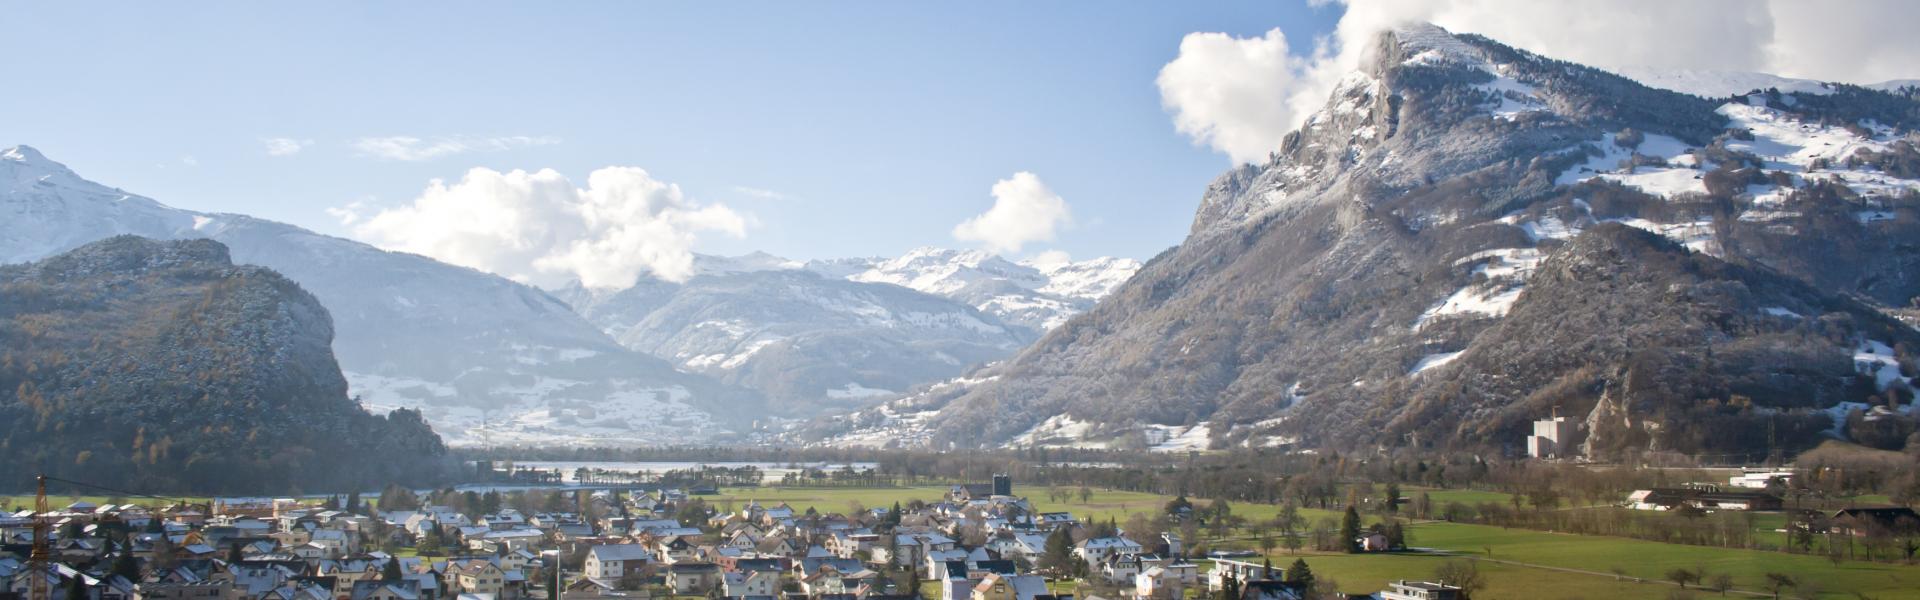 Noclegi w Liechtensteinie - HomeToGo